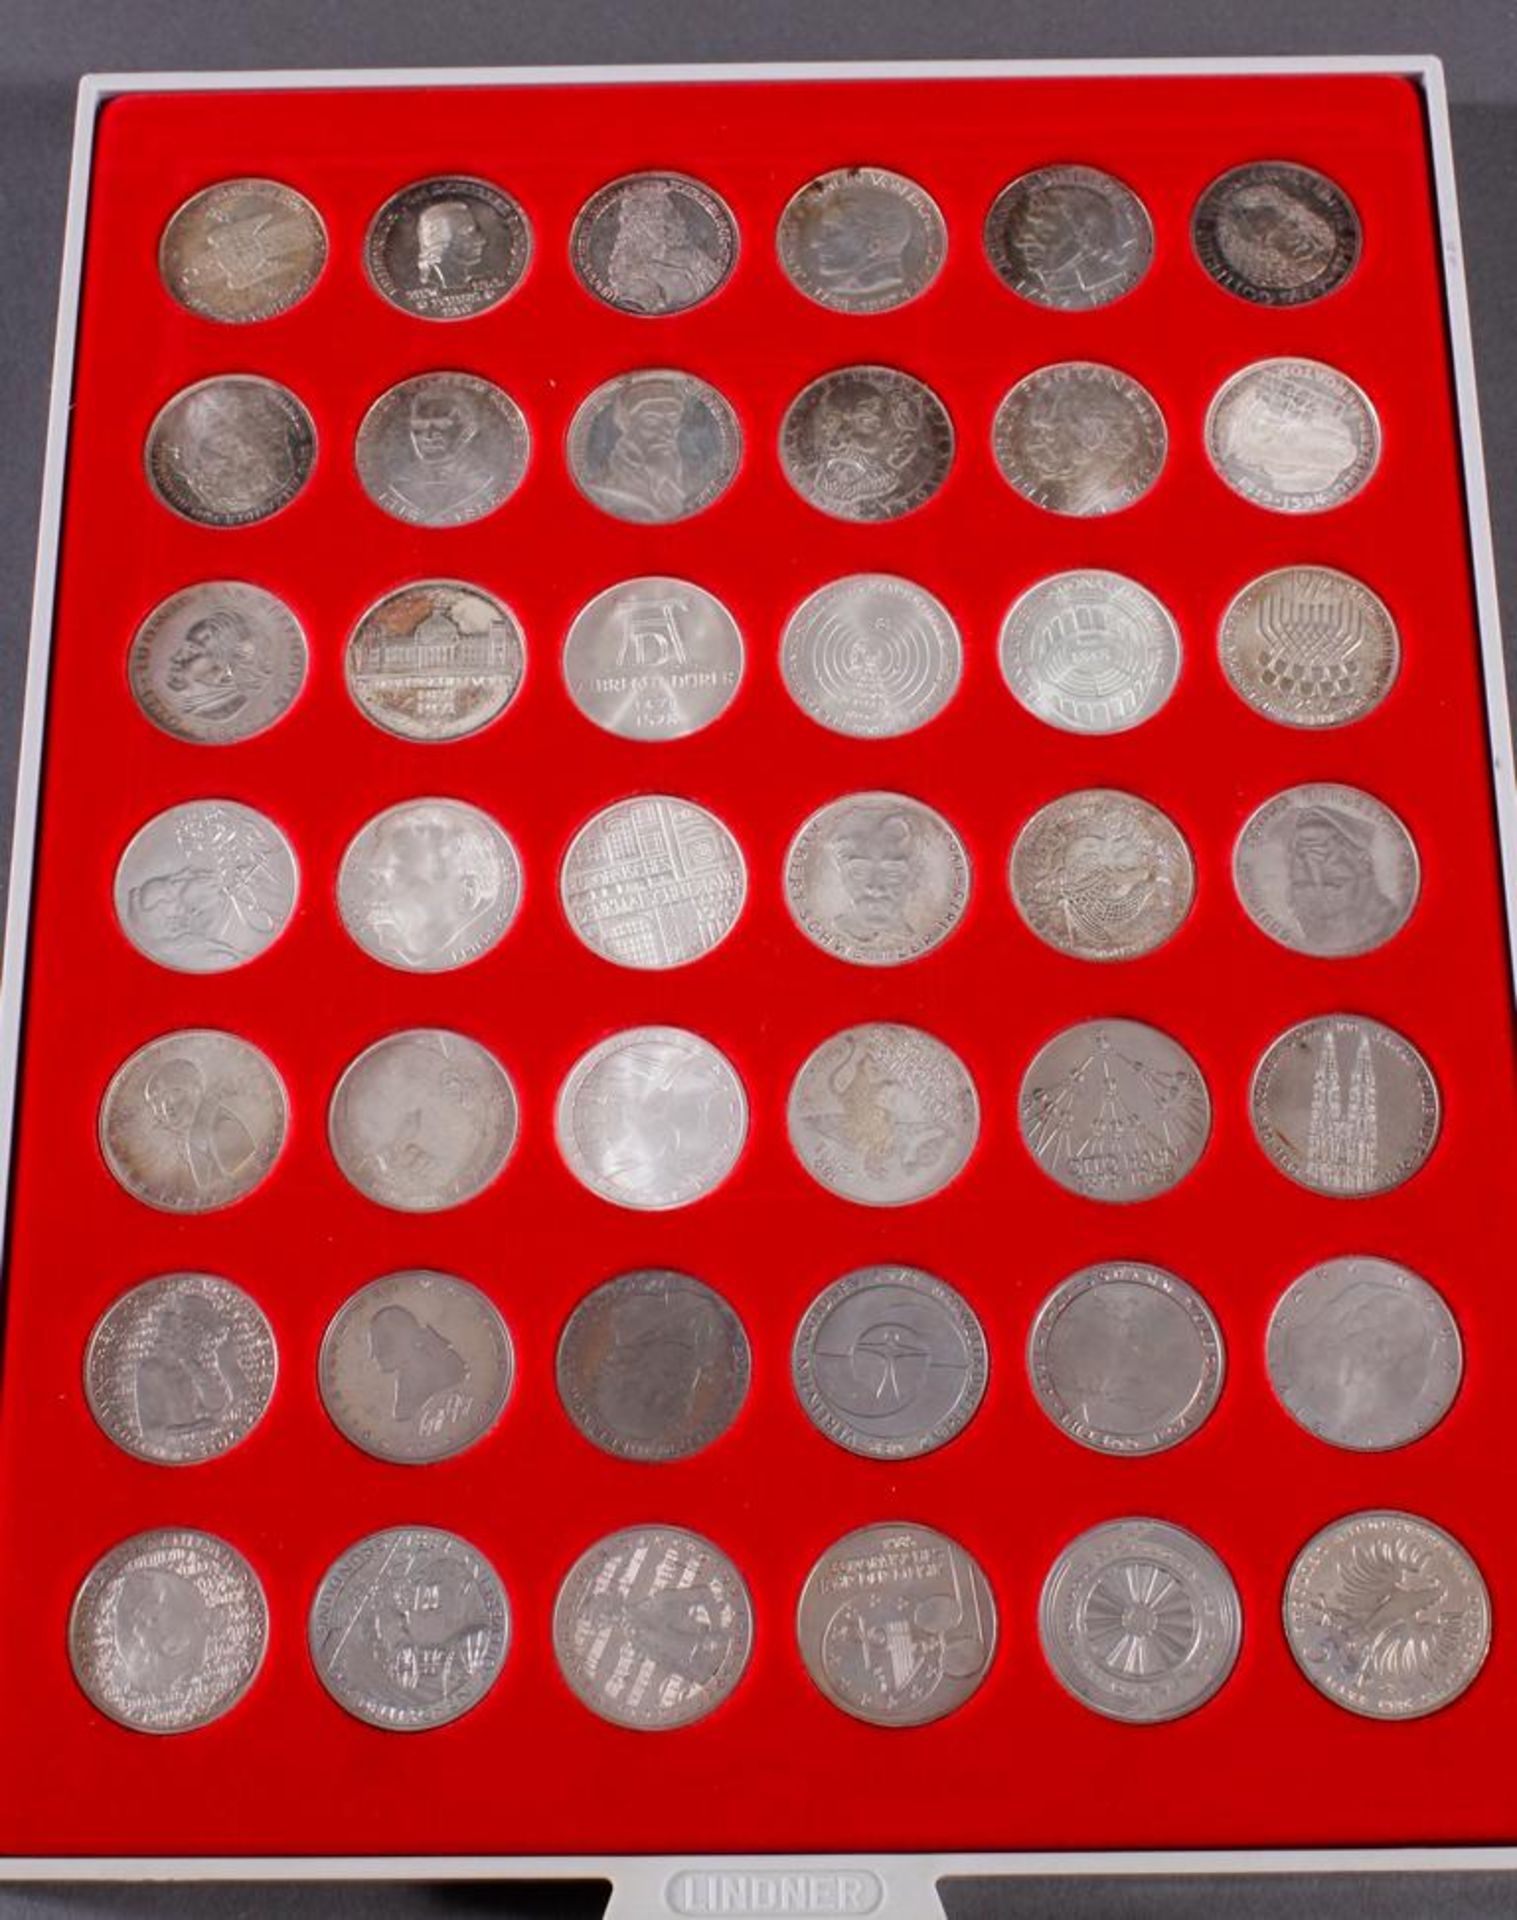 Bundesrepublik Deutschland, Komplettsatz der 5 DM GedenkmünzenAlle 43 Gedenkmünzen inklusive dem - Image 2 of 3